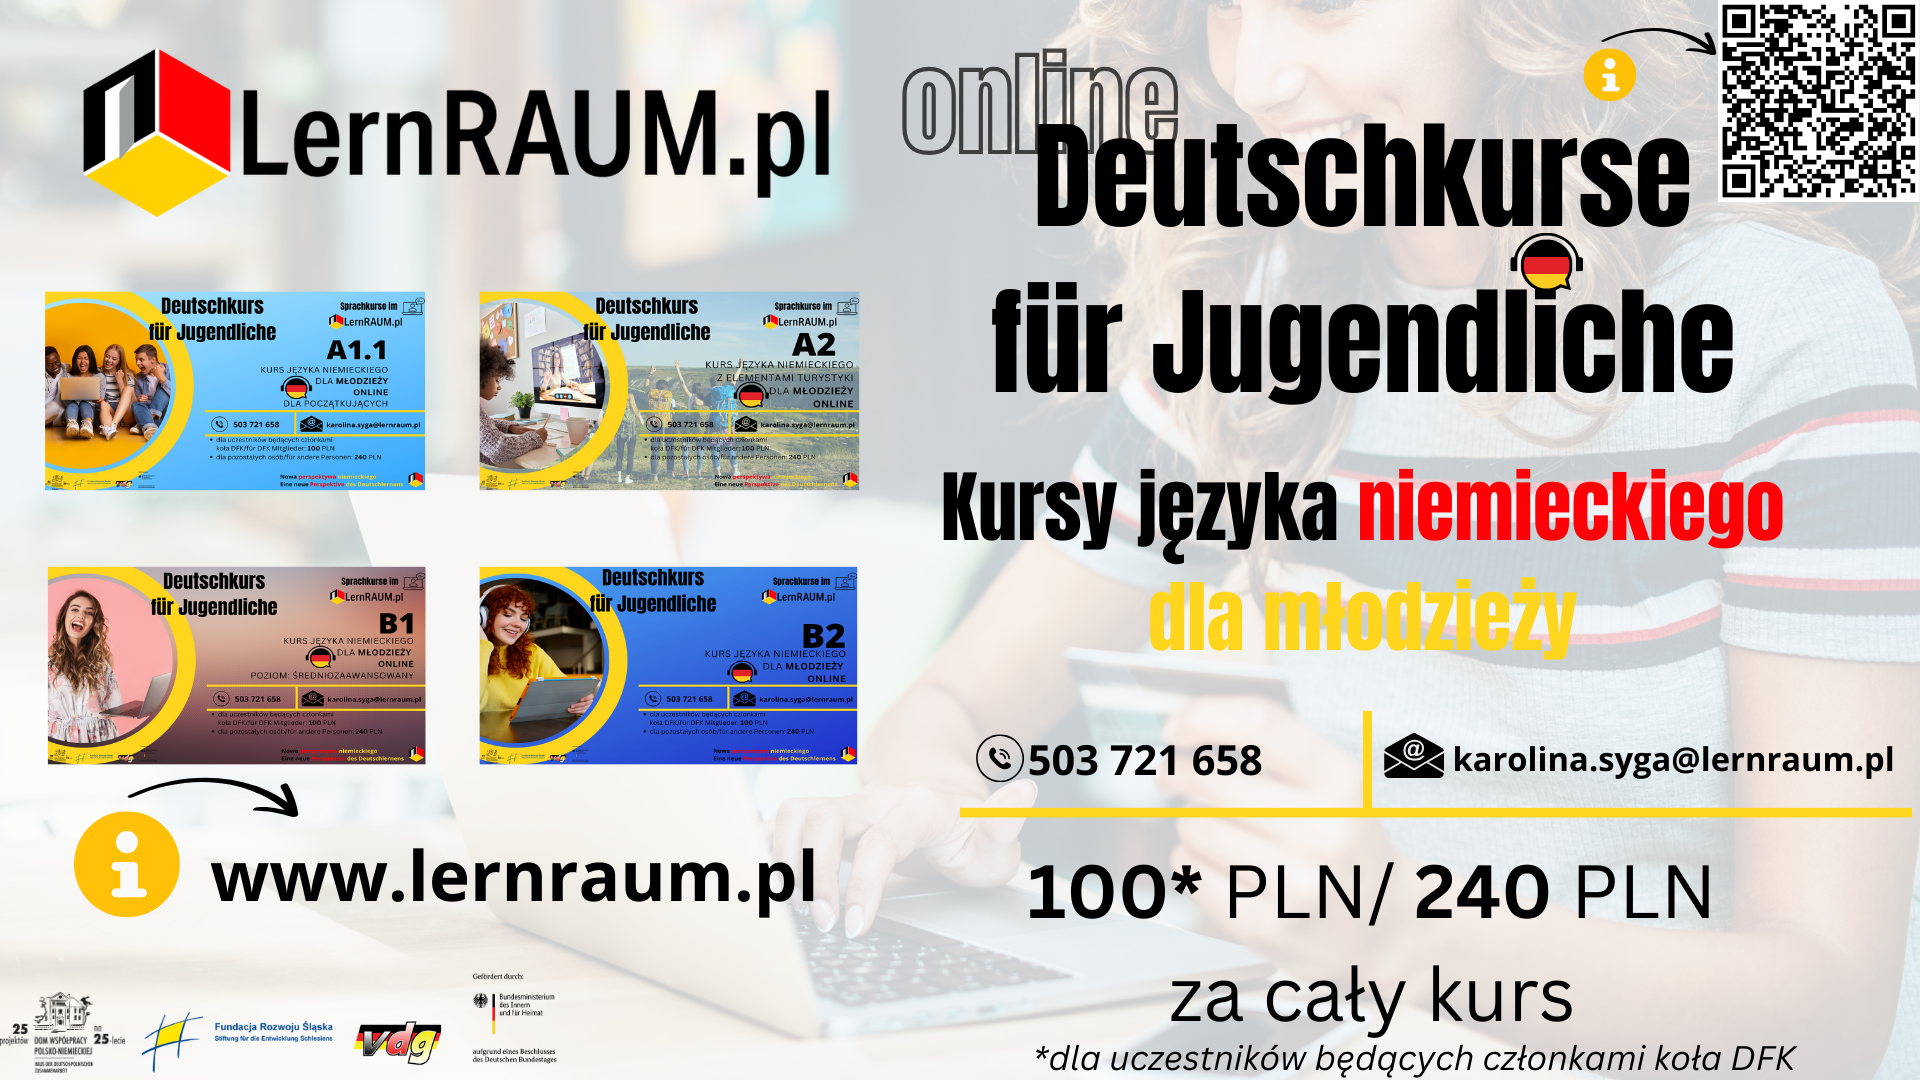 Online Deutschkurse für Jugendliche im Rahmen des Projekts LernRAUM.pl